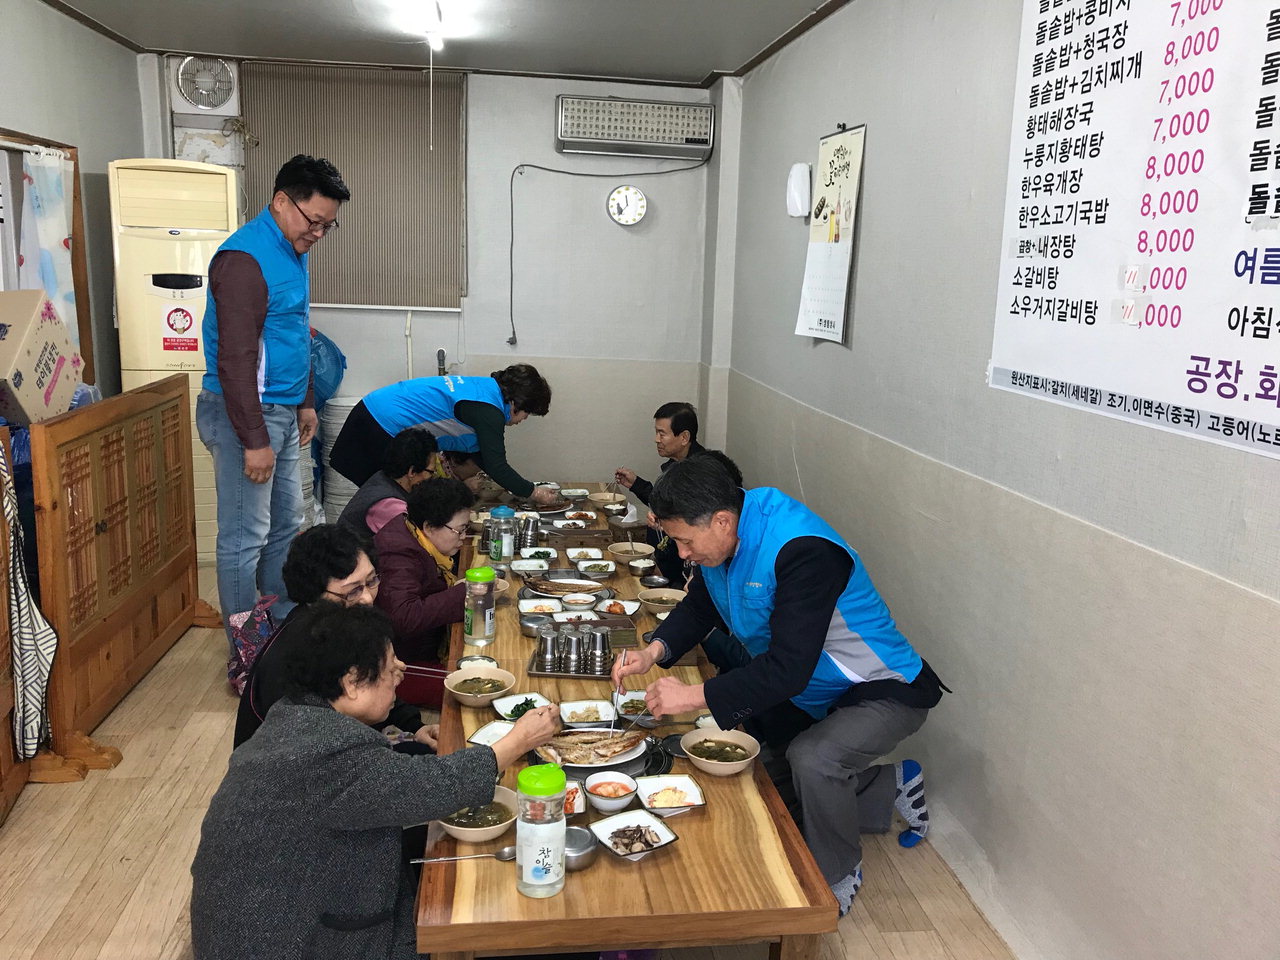 맛난-Day 사업으로 배려계층에게 점심을 제공하는 모습